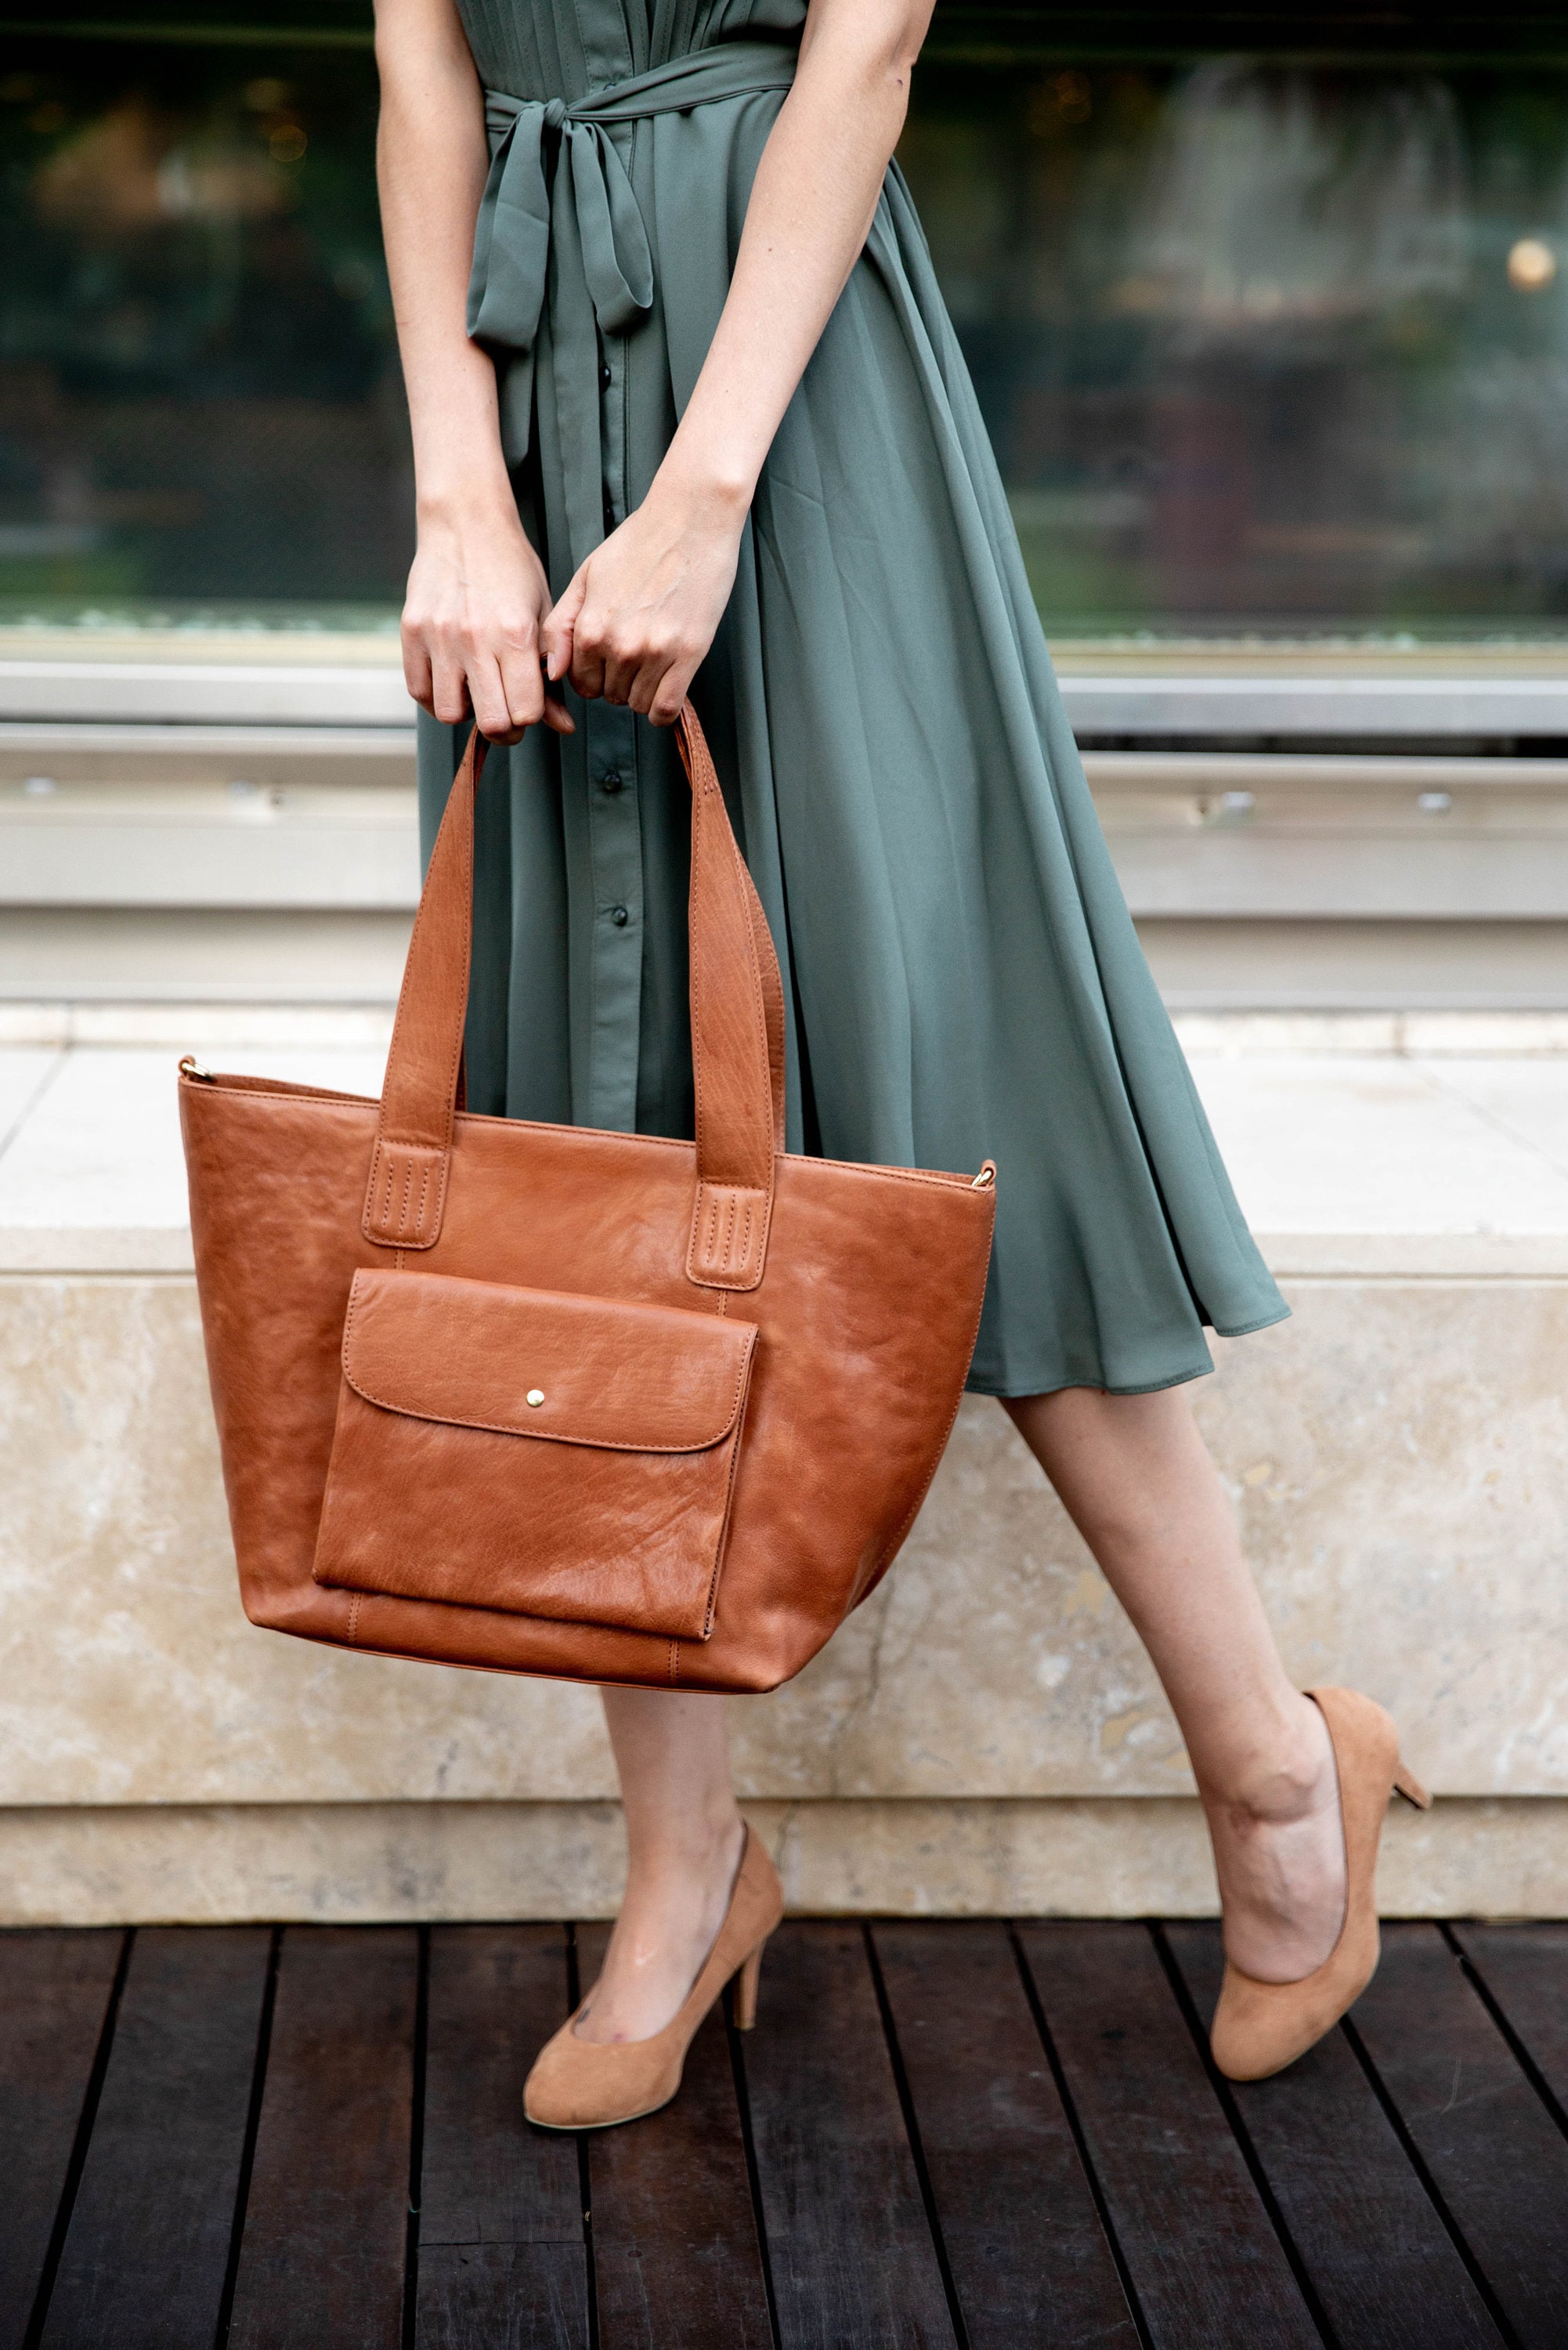 Tote bag Leather Handbag Lining, bag, brown, luggage Bags, leather